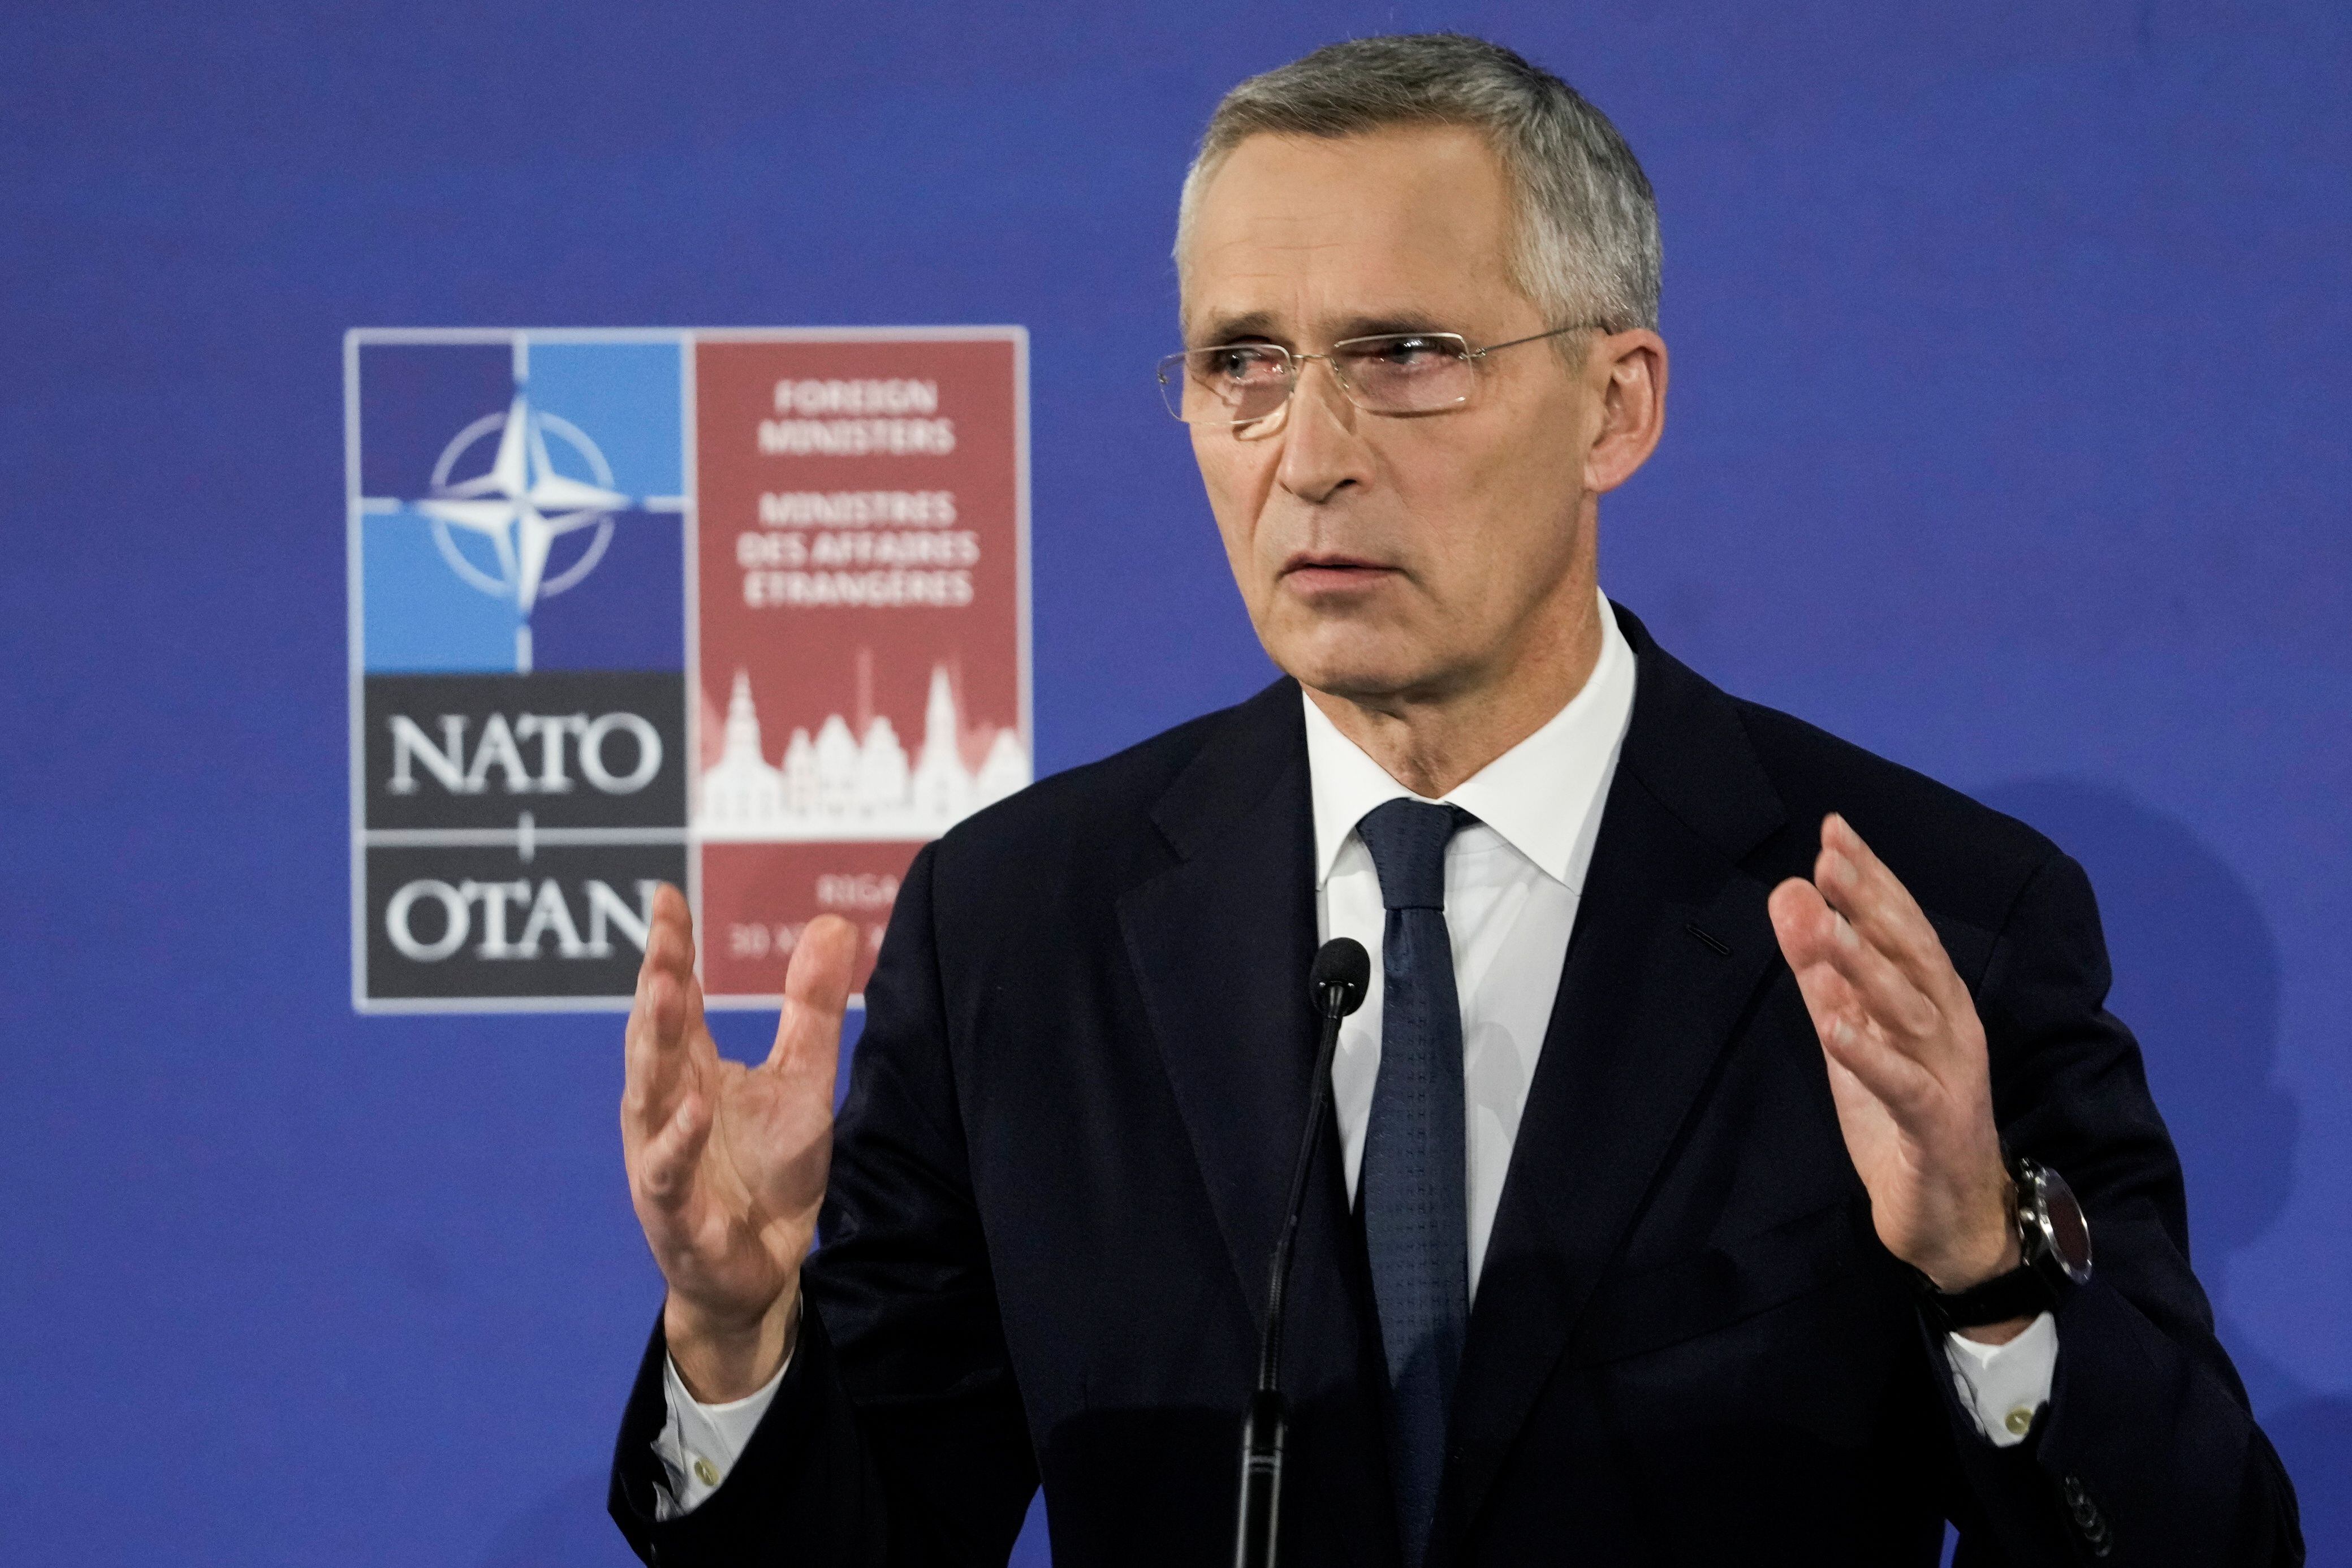 Jens Stoltenberg, NATO Secretary General (Photo: REUTERS / Ints Kalnins)